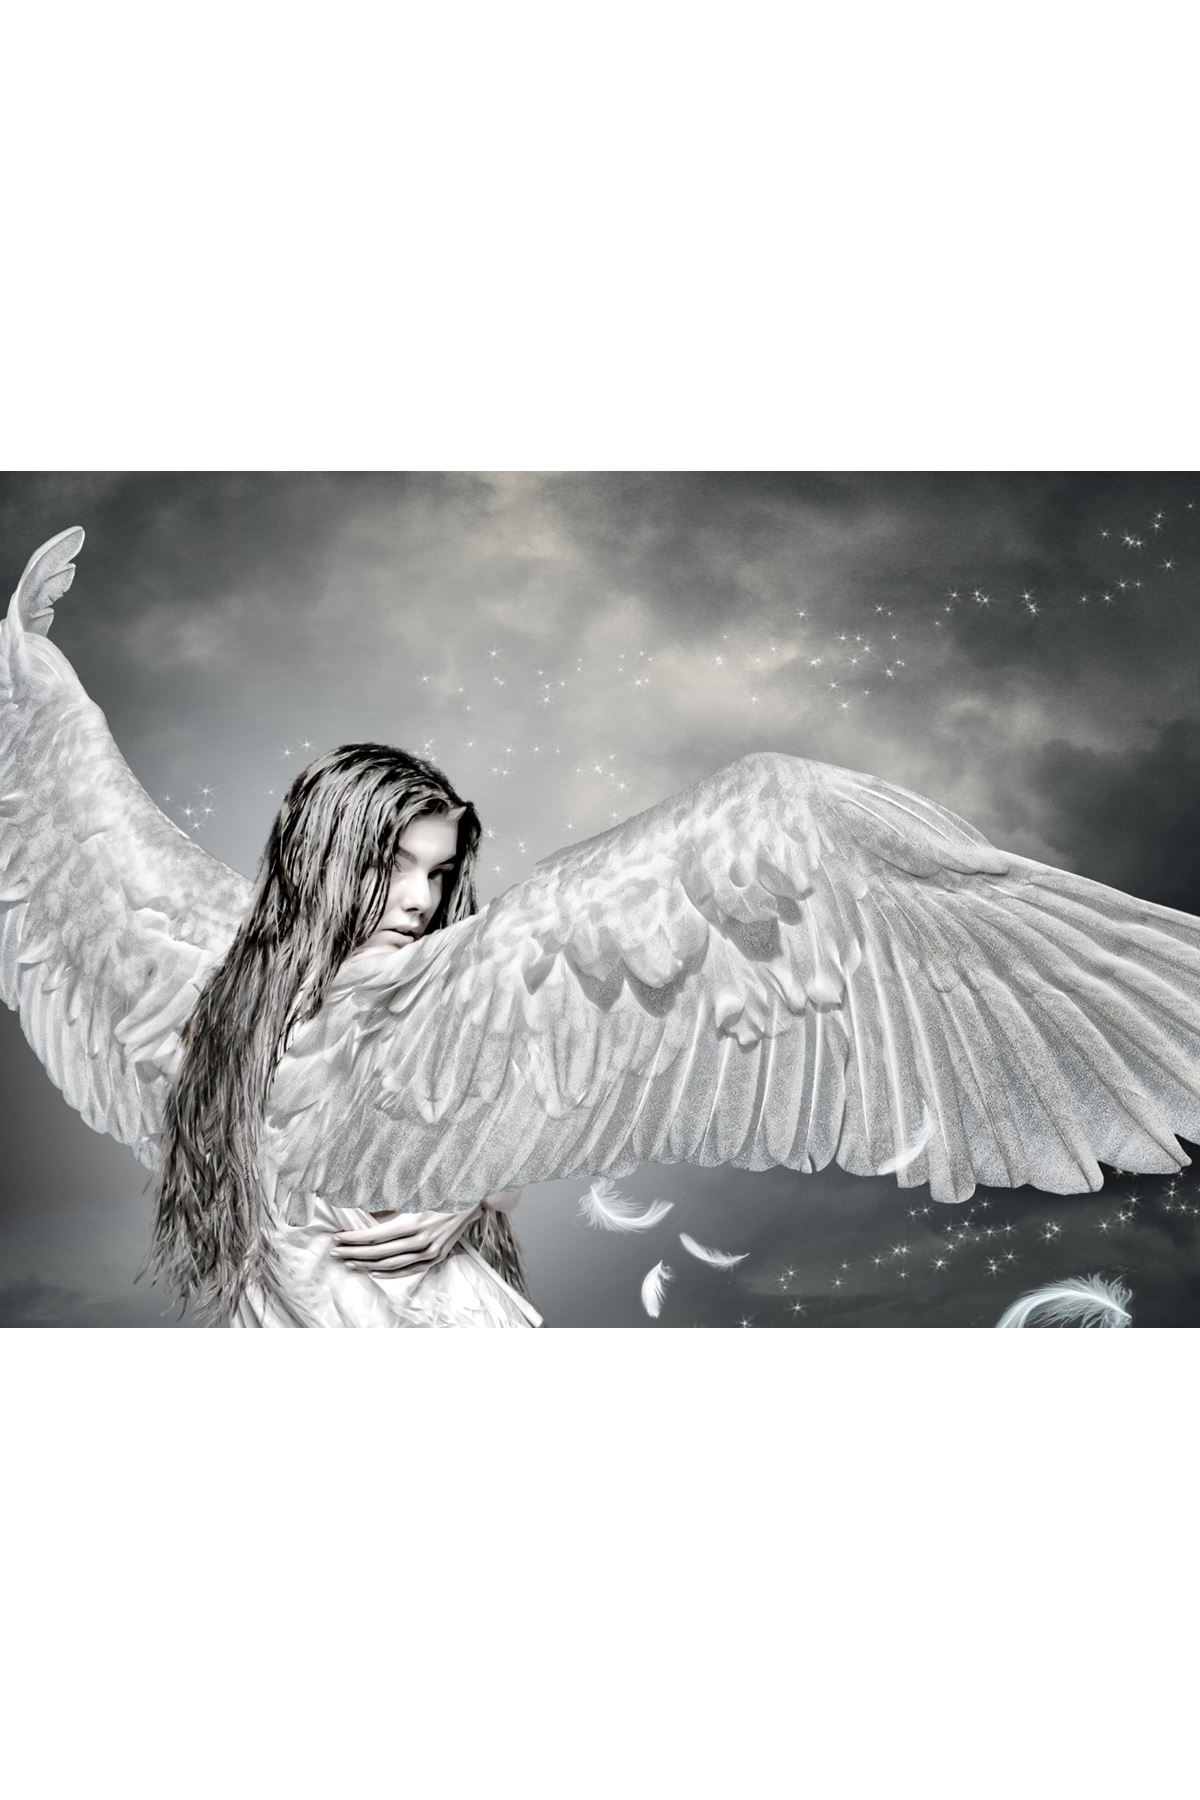 Melek Kadın Kanvas Tablo, Angel Woman